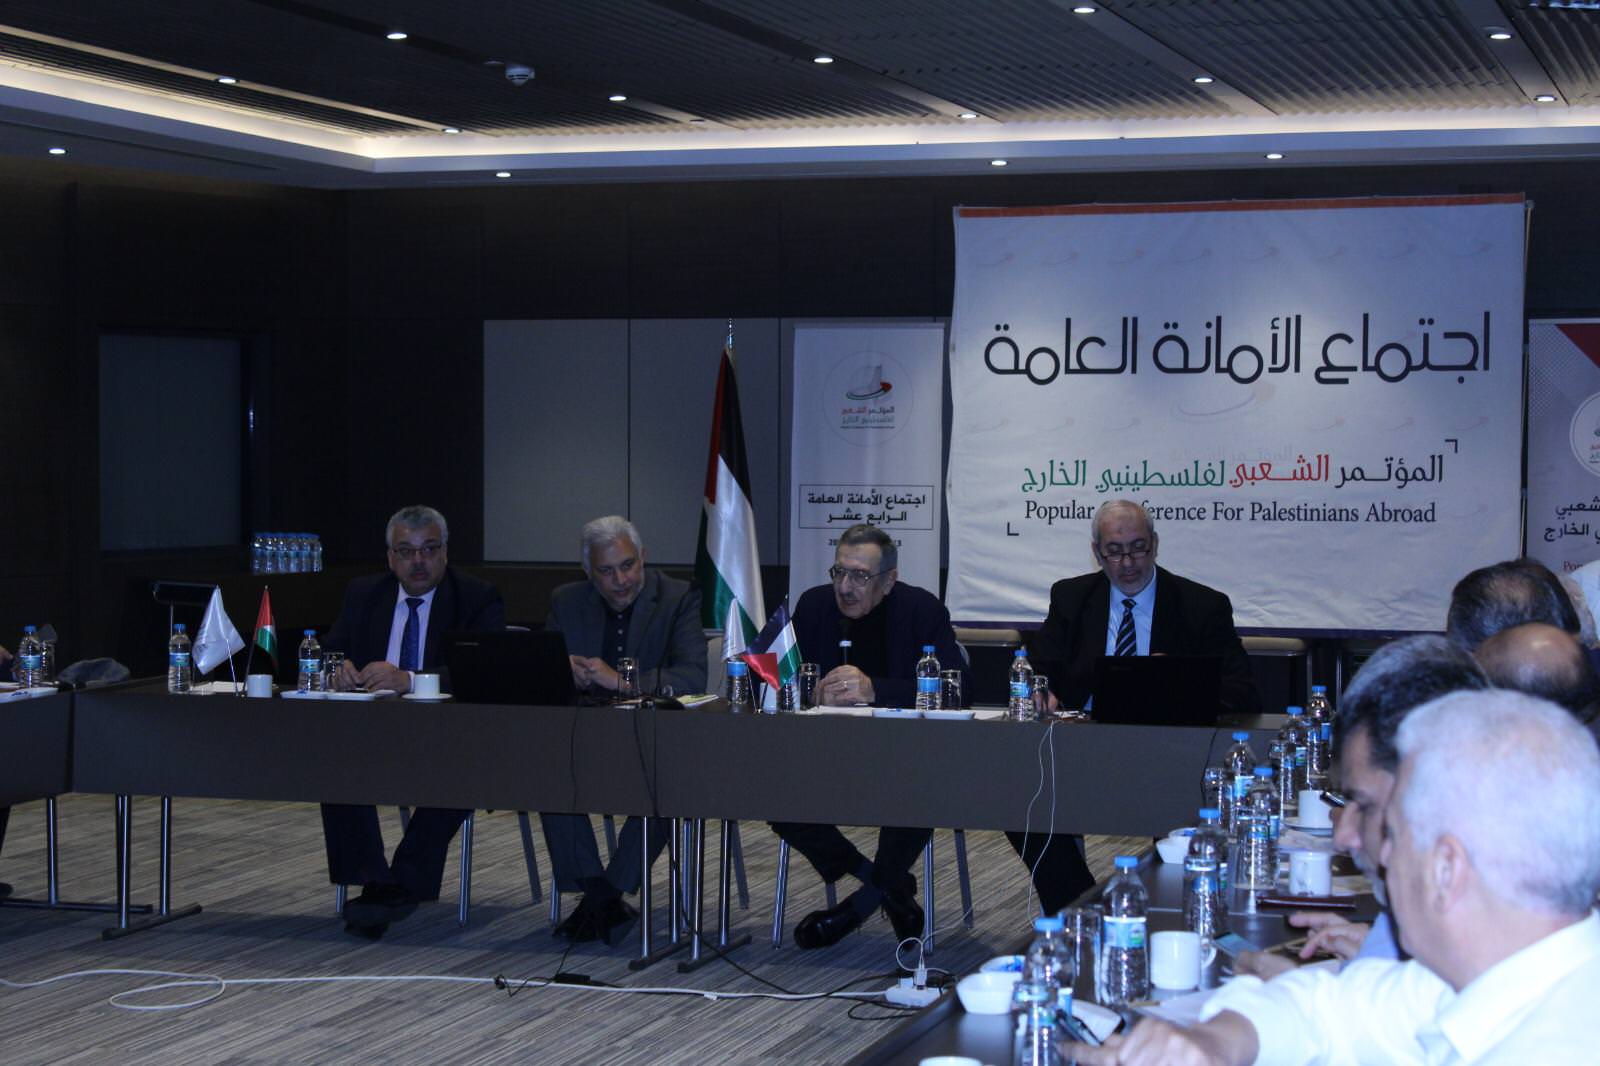 المؤتمر الشعبي لفلسطينيي الخارج يعقد في اسطنبول الاجتماع الأول لمنسقياته حول العالم